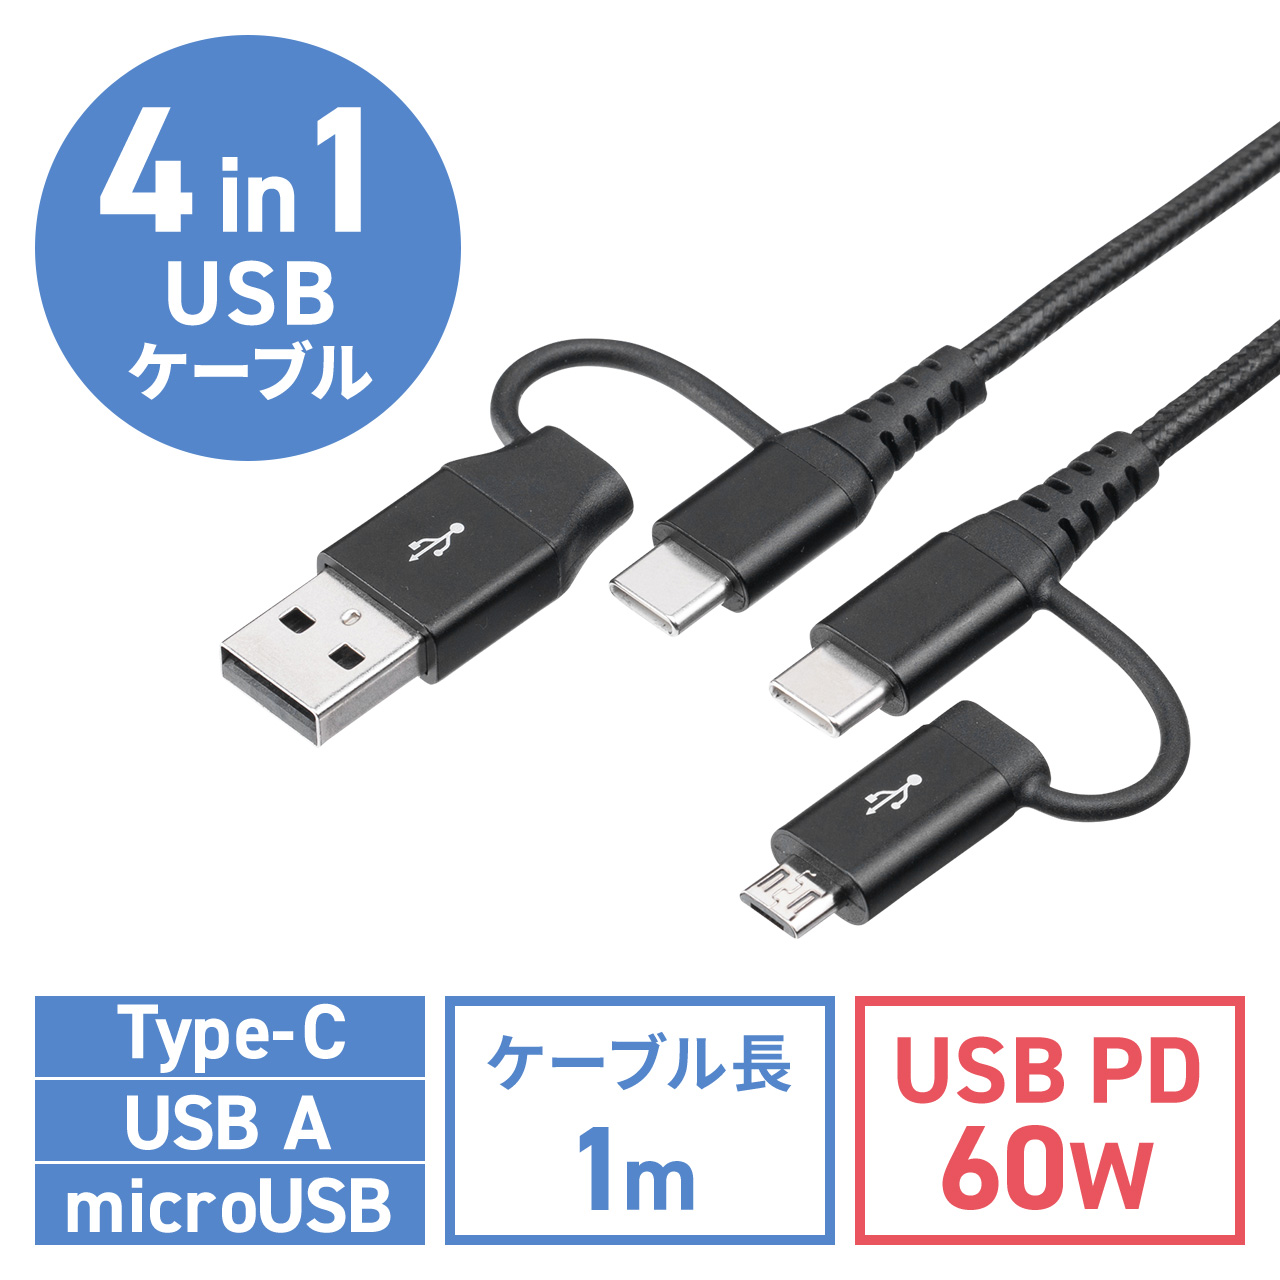 4in1 USB2.0ケーブル PD60W対応 Type-C Type-A microUSB 1m 高耐久 ポリエチレンメッシュケーブル 充電 データ転送 スマホ タブレット ブラック 500-USB075